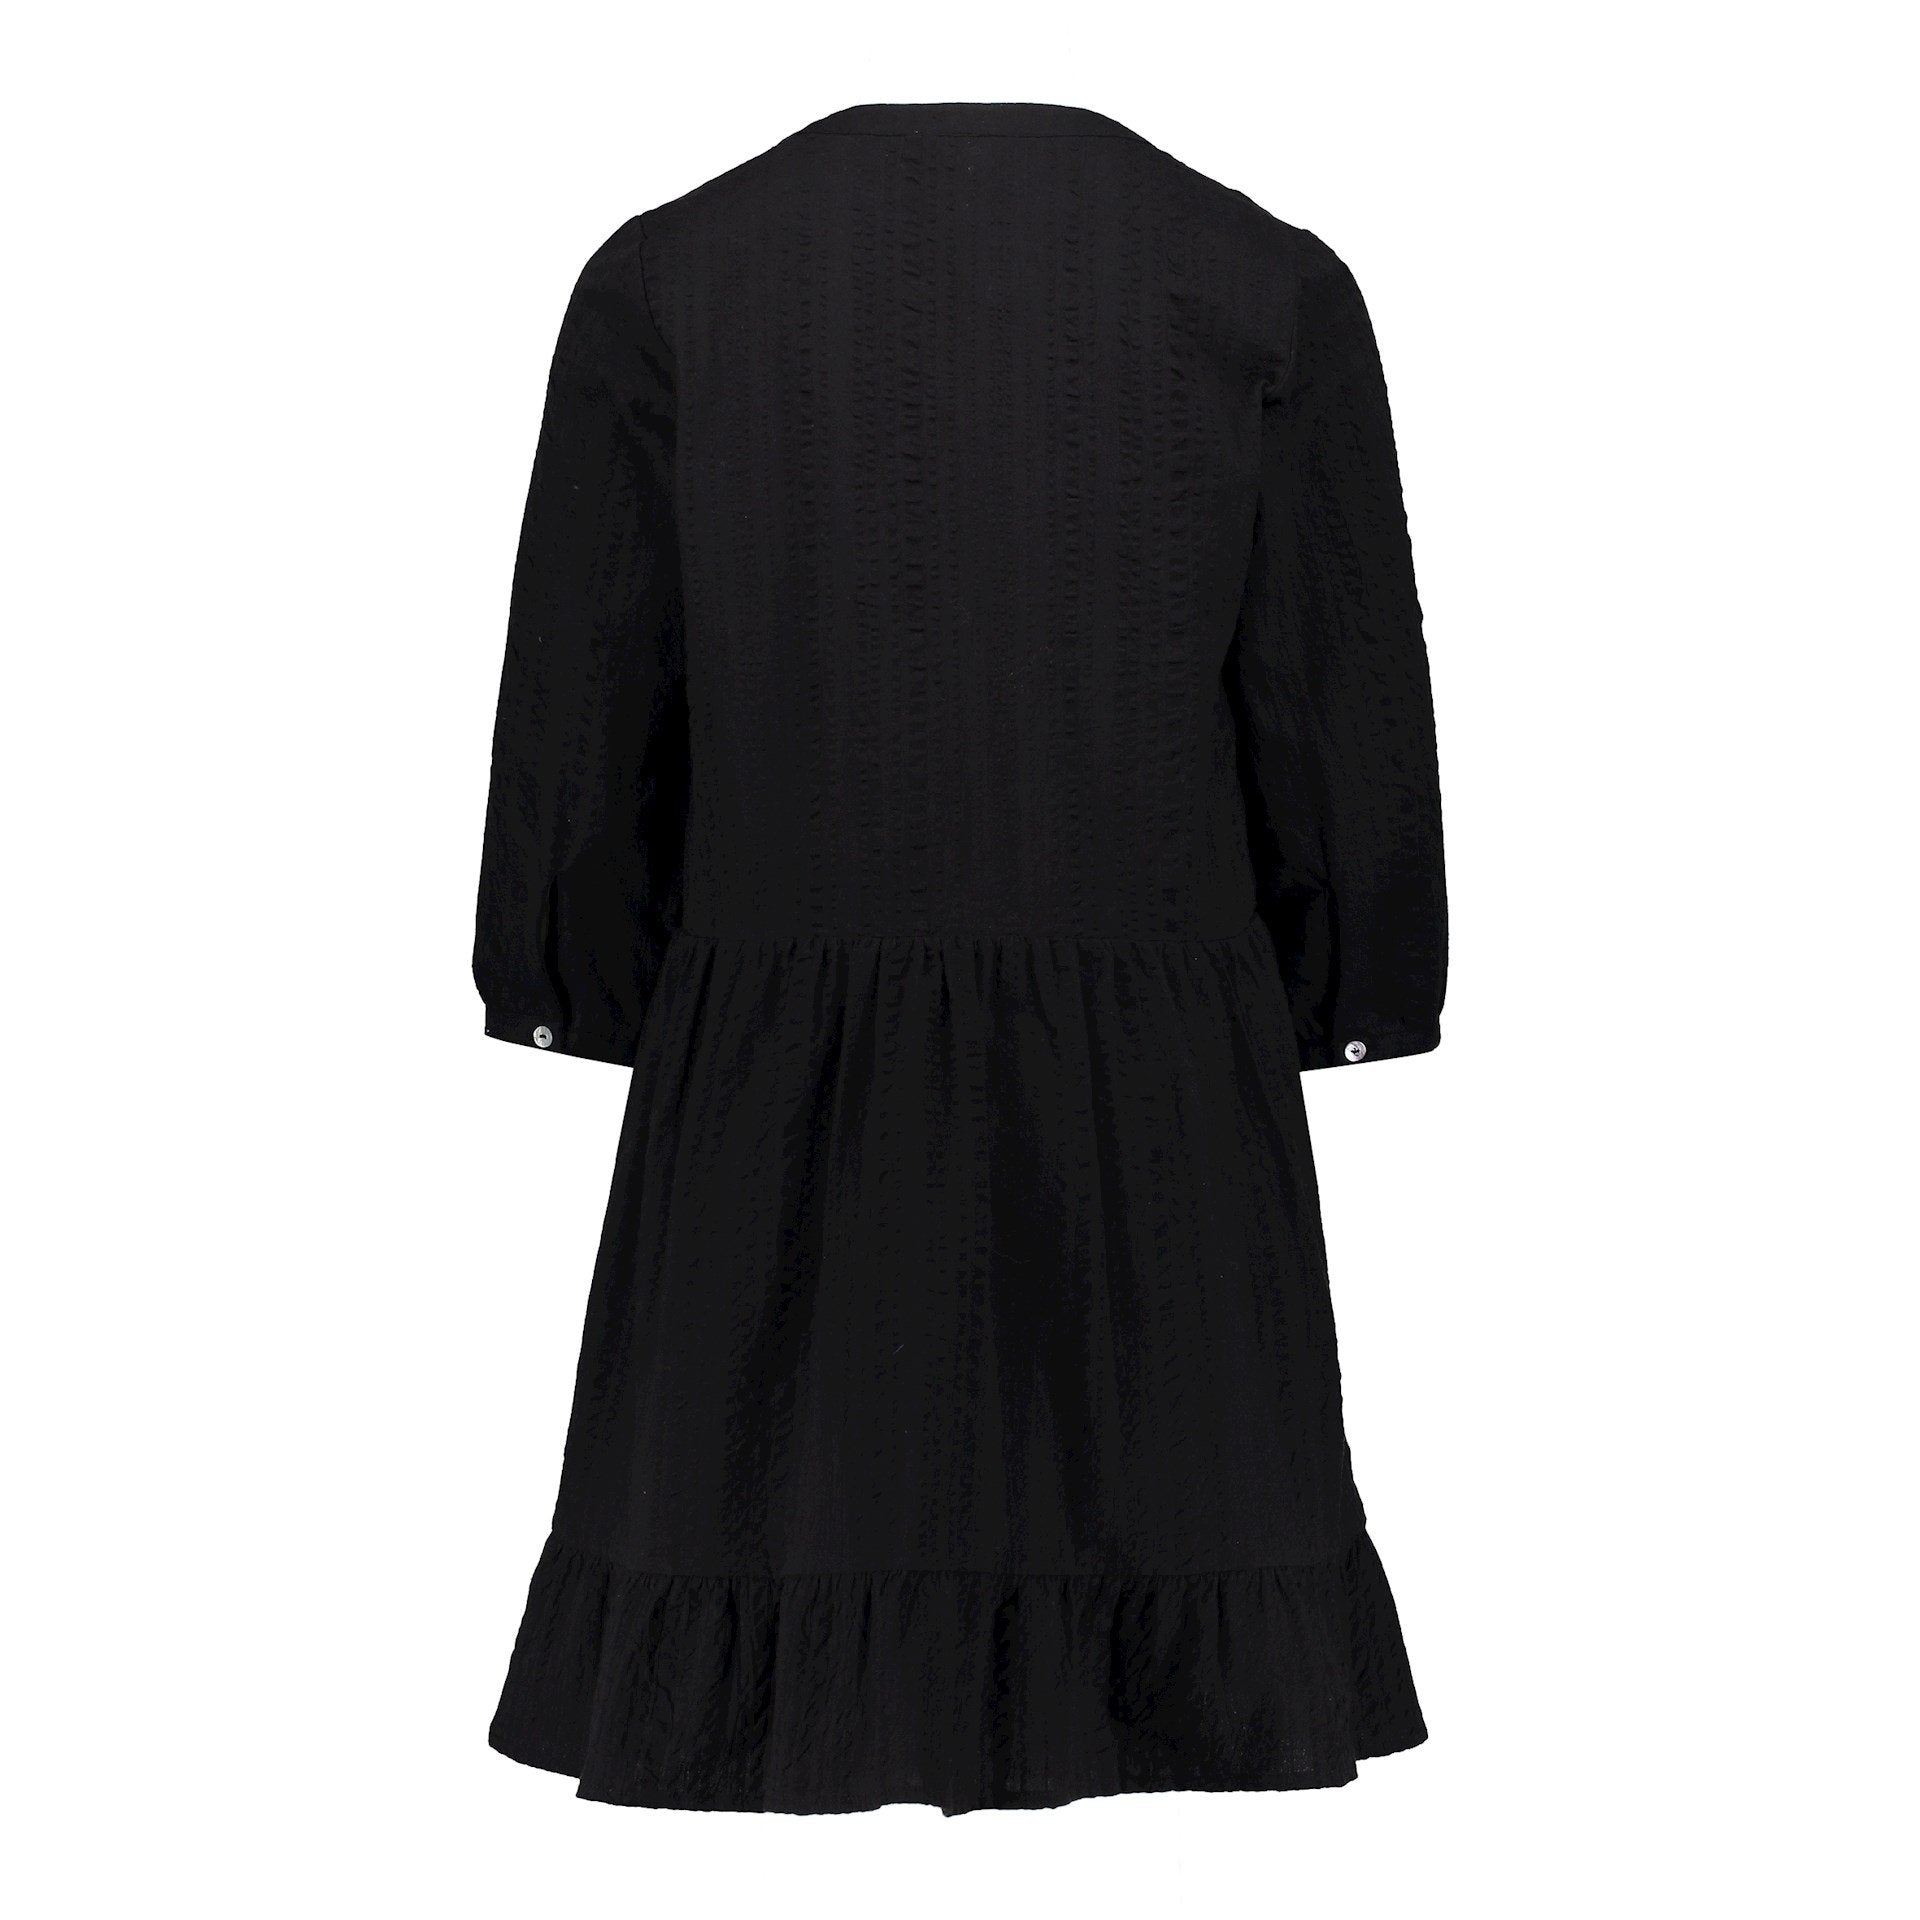 Meisjes Dress seersucker van Geisha in de kleur Black in maat 176.